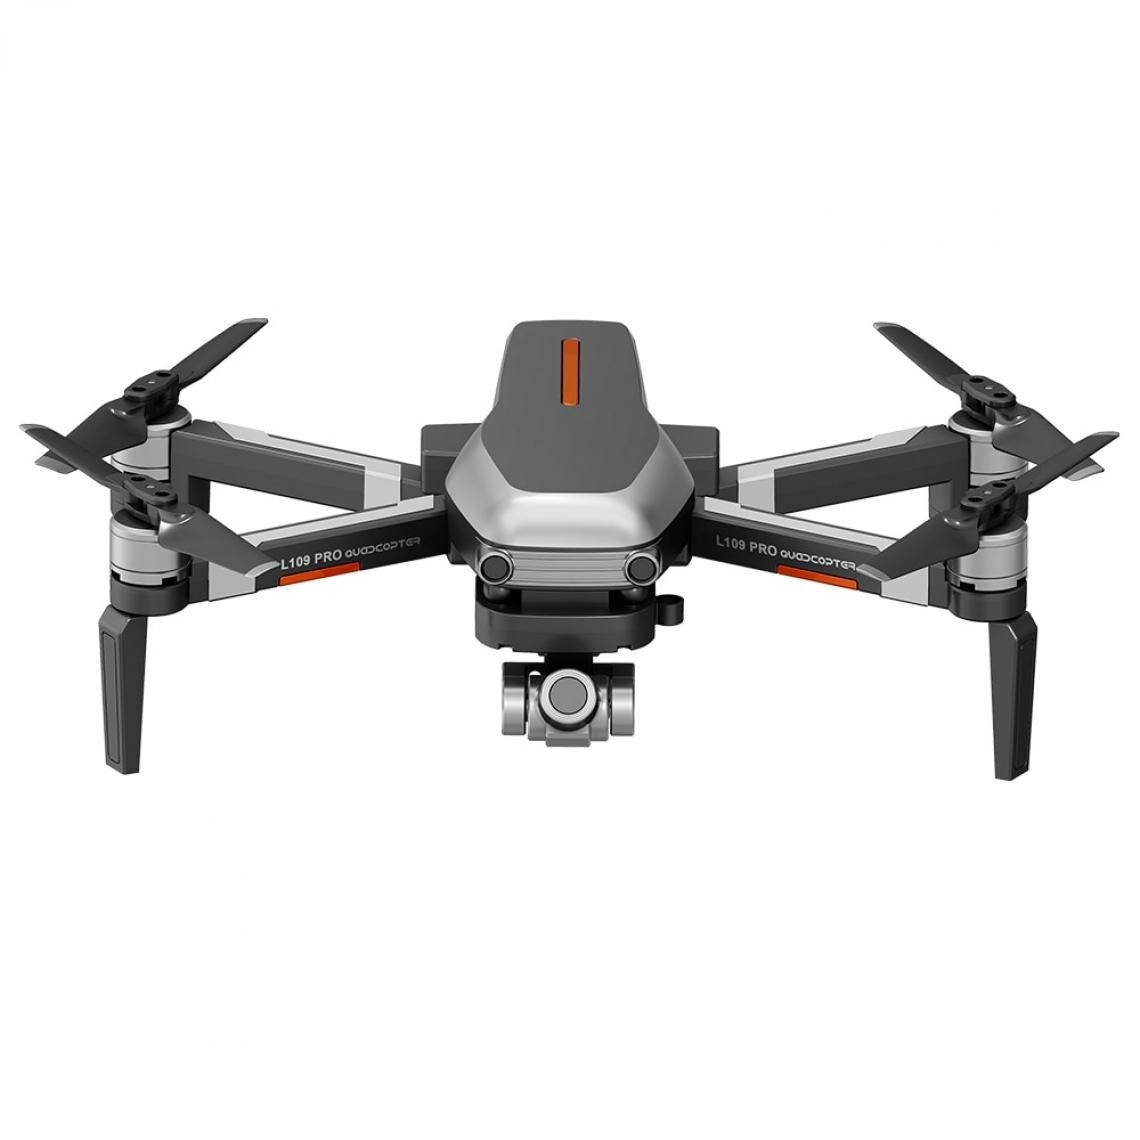 Universal - Drone GPS L109 Pro avec cardan à 2 axes, anti-vibrations, auto-confluence, WiFi, FPV, caméra 4K, quadricoptère sans brosse, comparaison SG906 Pro F11 Zen K1 | hélicoptère RC(Gris) - Drone